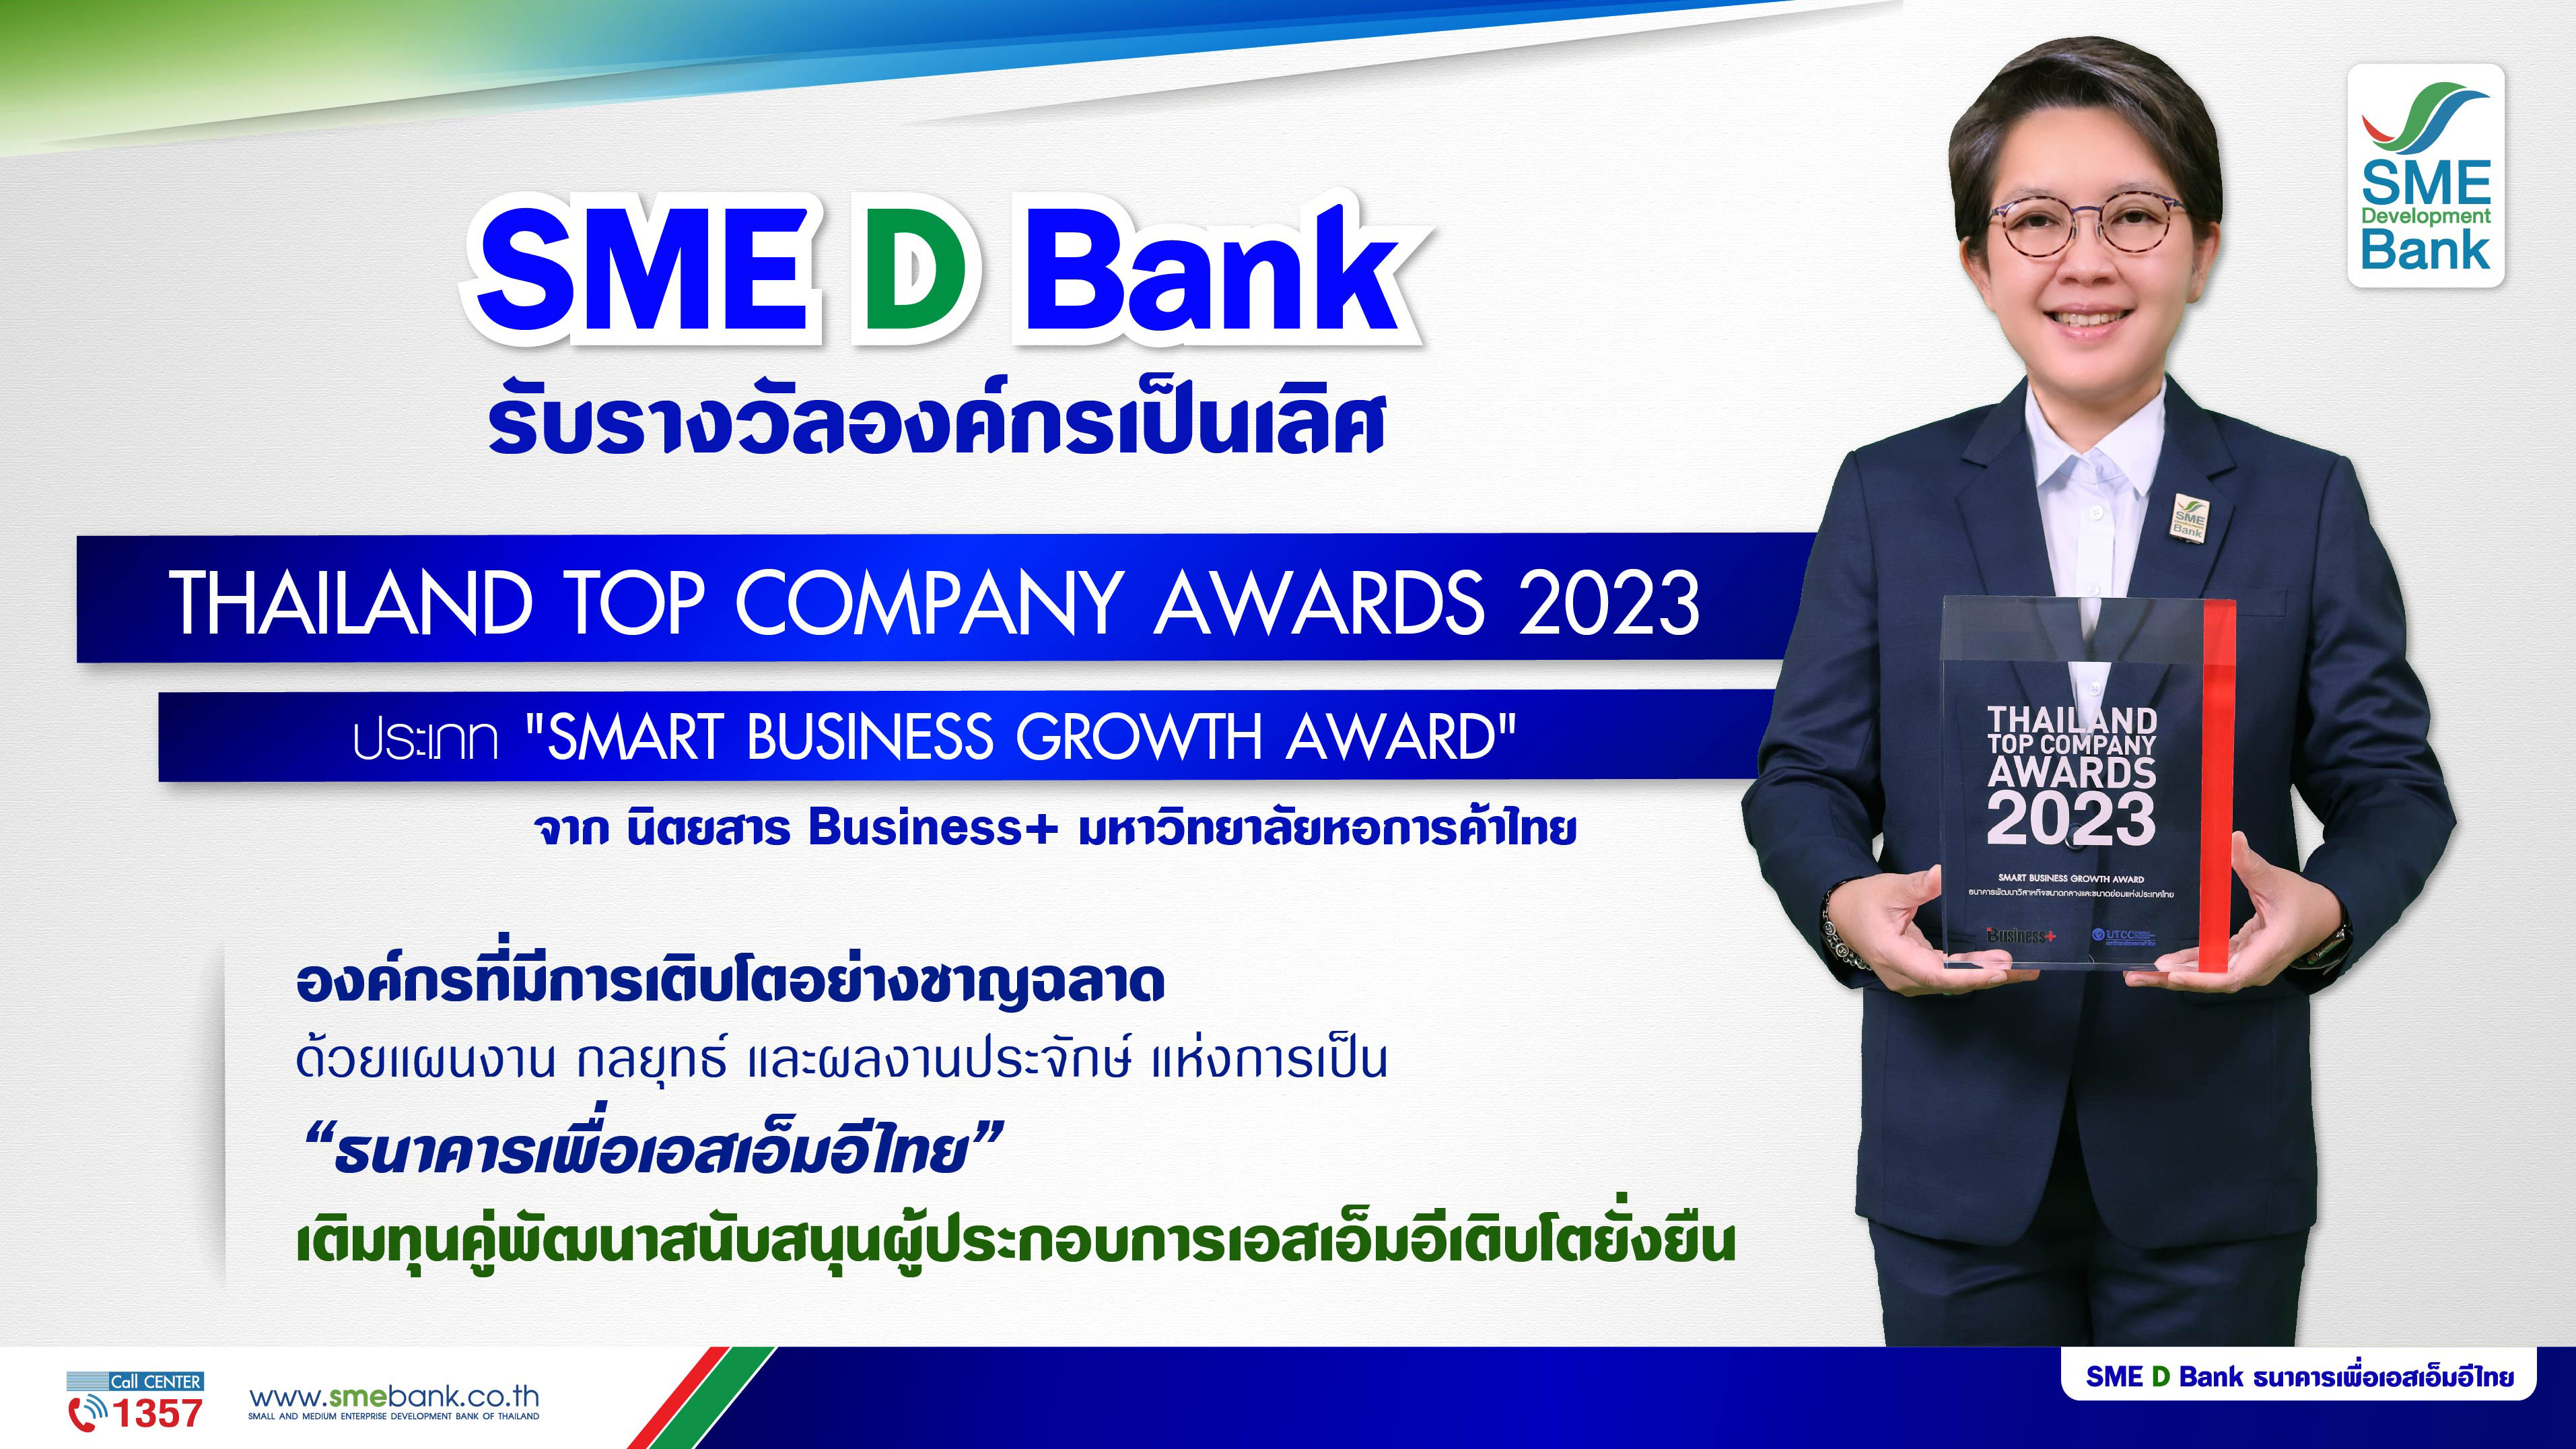 SME D Bank รับรางวัลองค์กรเป็นเลิศ ‘SMART BUSINESS GROWTH AWARD’ ตอกย้ำบทบาท “ธนาคารเพื่อเอสเอ็มอีไทย” สนับสนุน SMEs เติบโตยั่งยืน